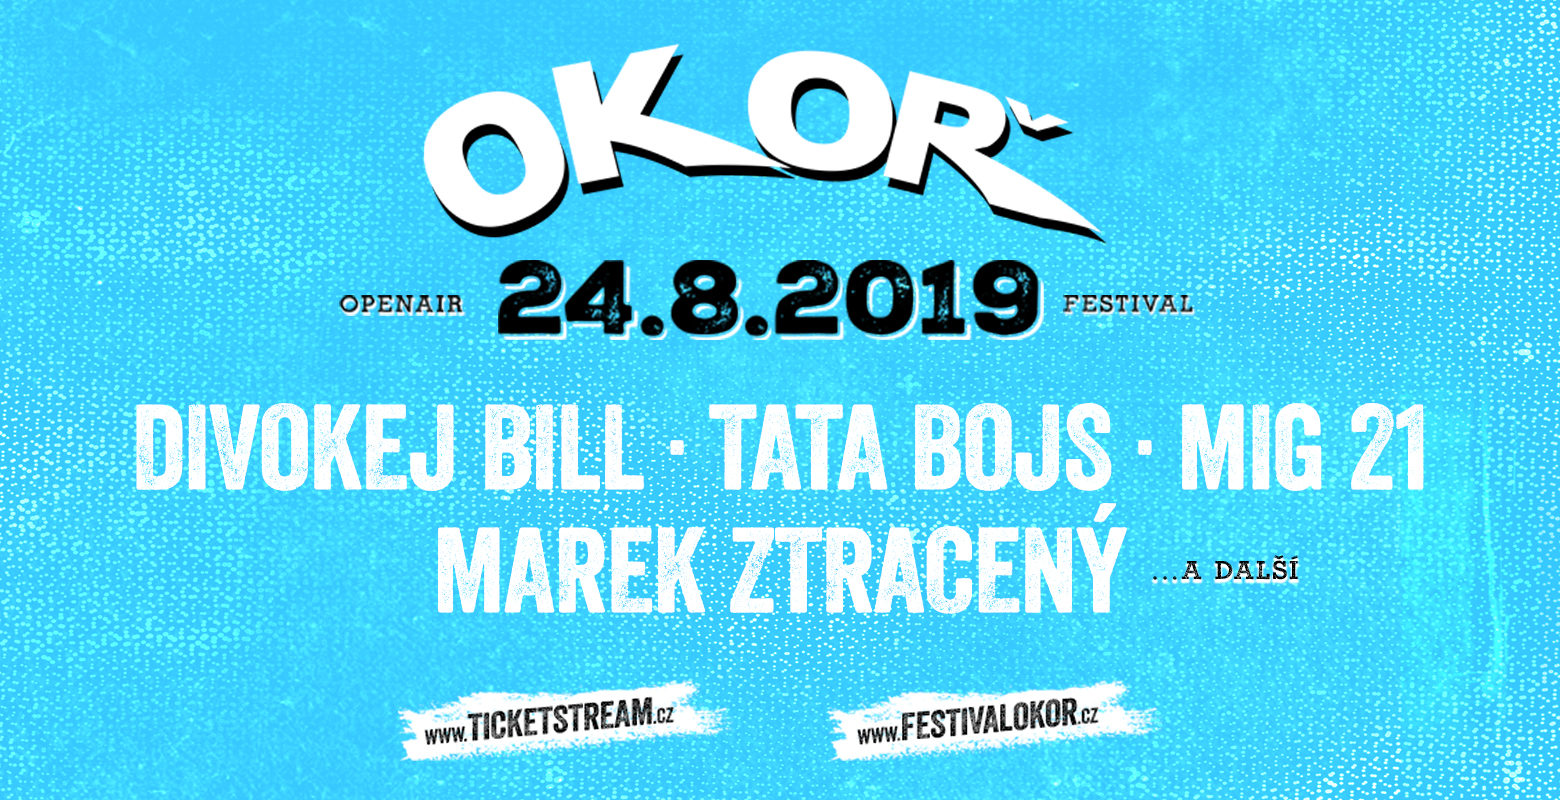 Festival Okoř, Hrad Okoř, Velké Přílepy - Vstupenky | Ticketstream